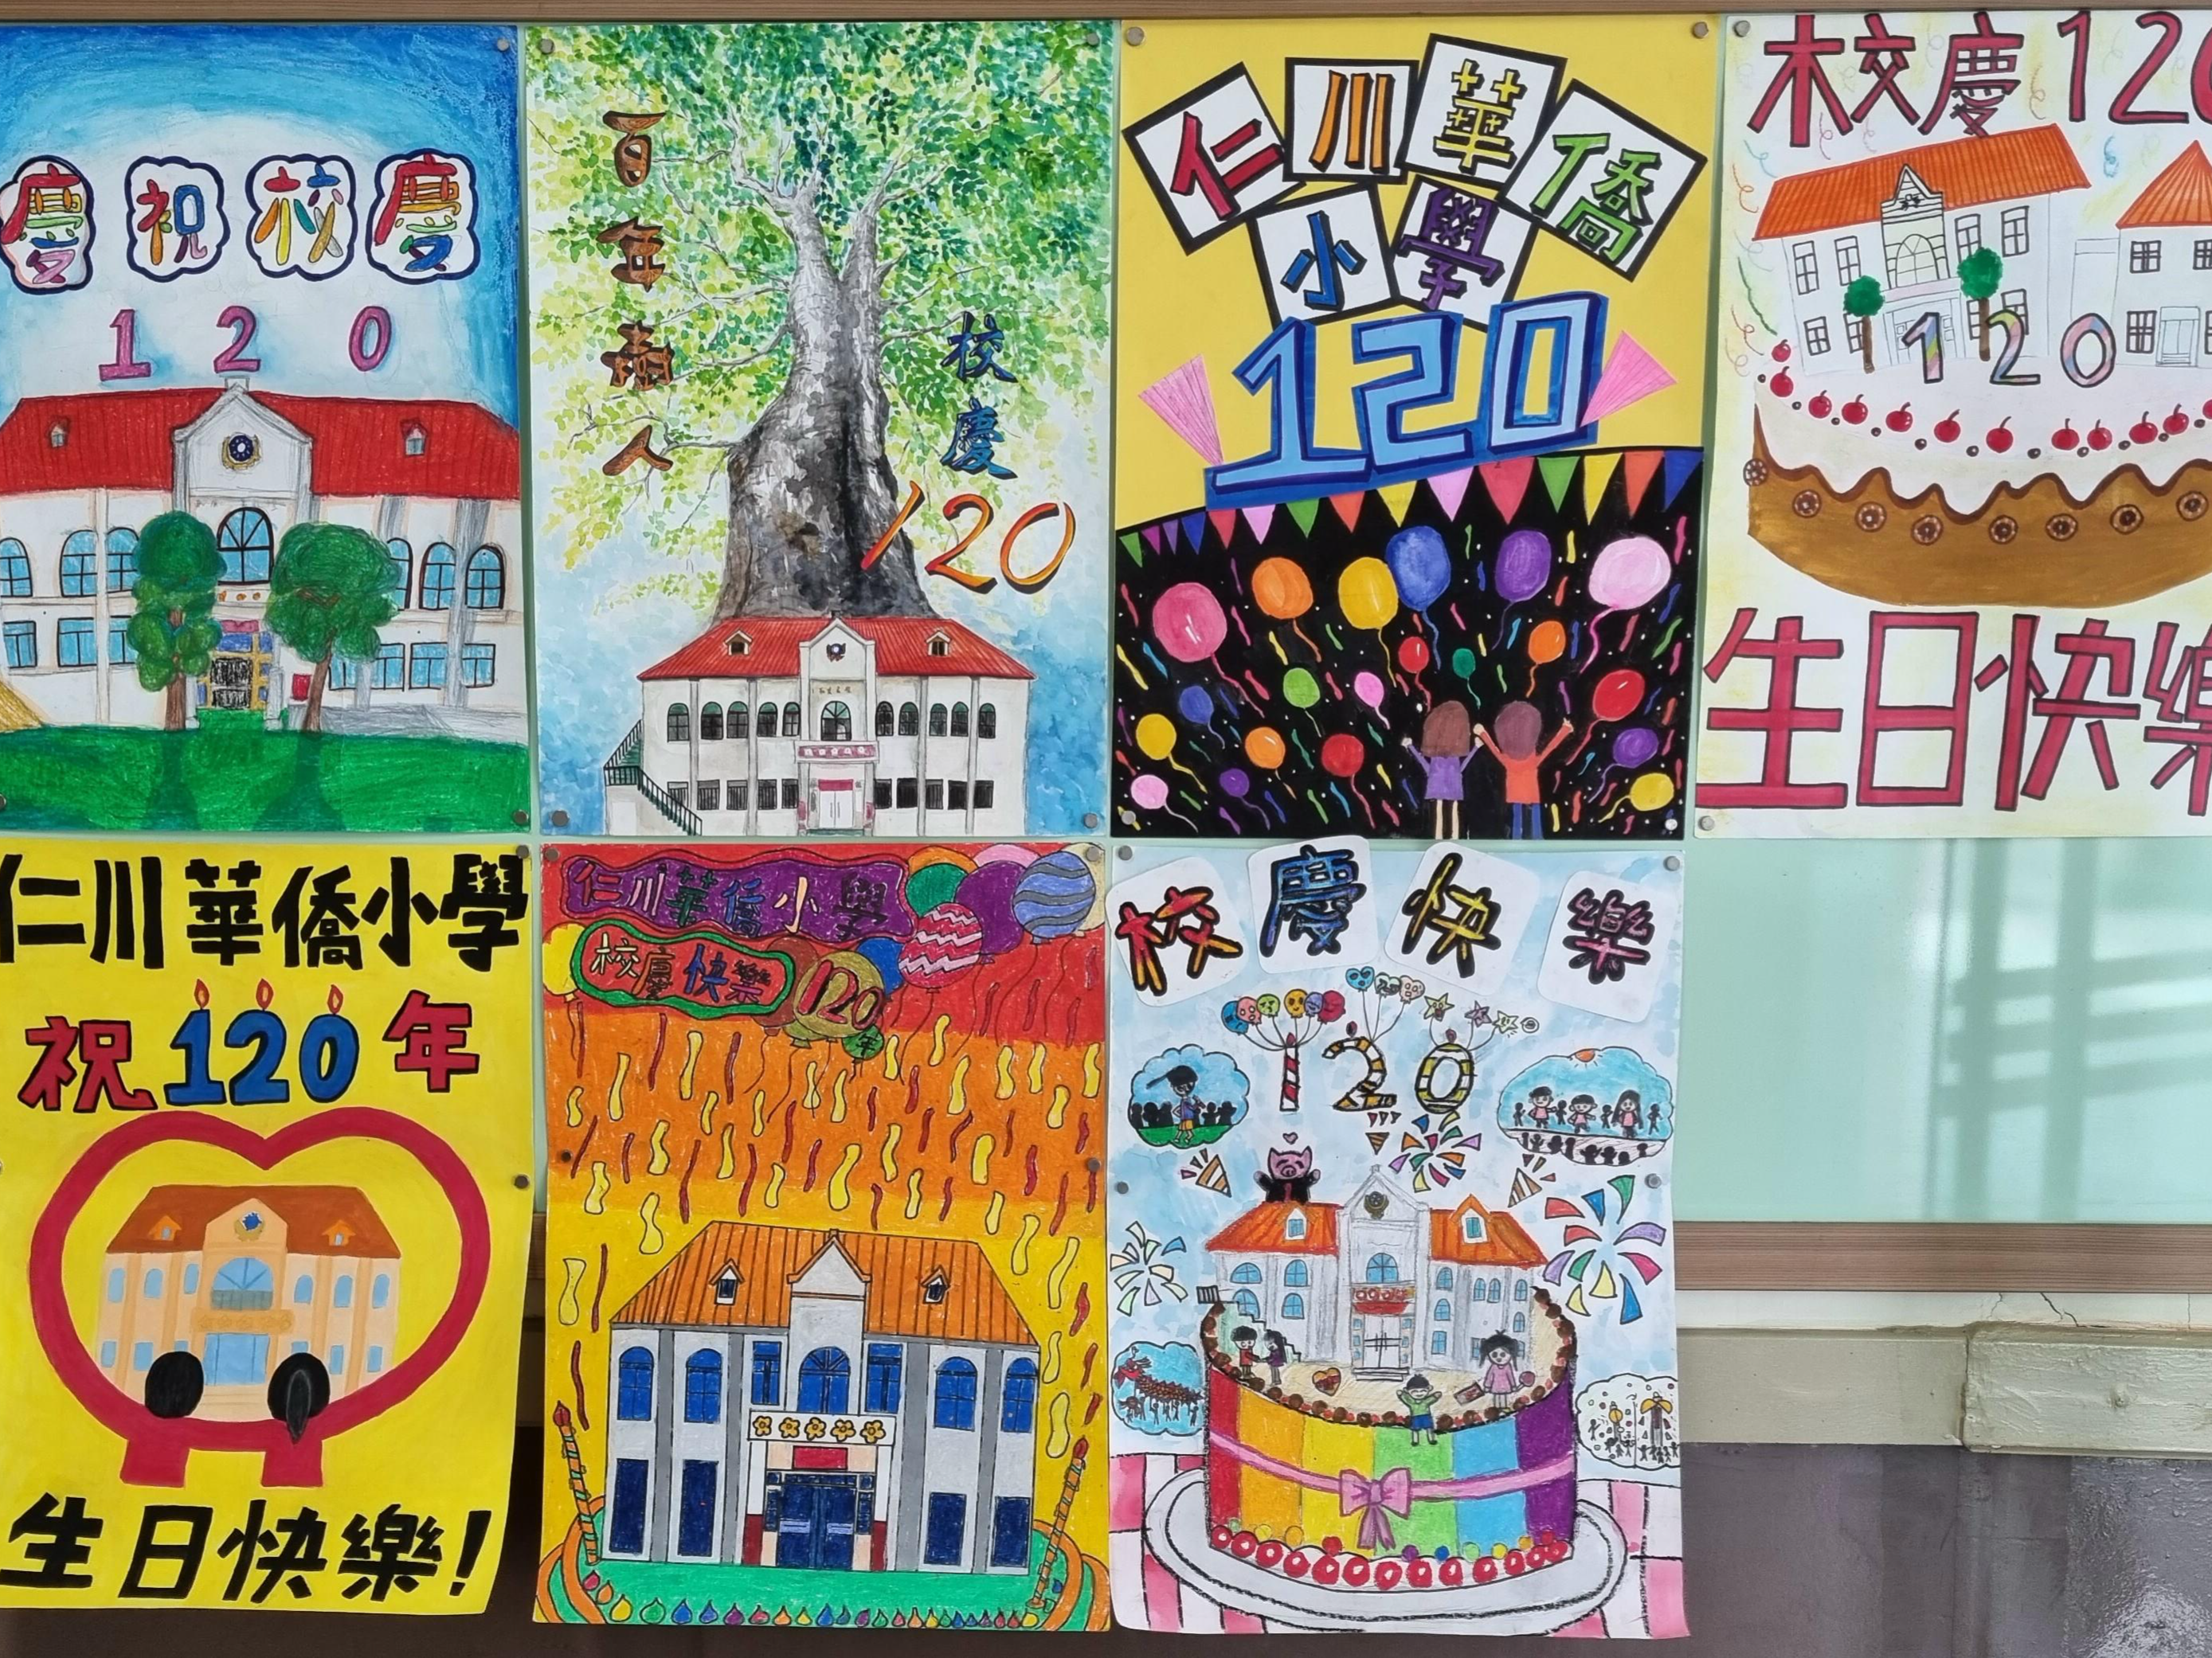 韓國仁川華僑中山中小學   2021 正體漢字文化節系列活動與120周年校慶圖片